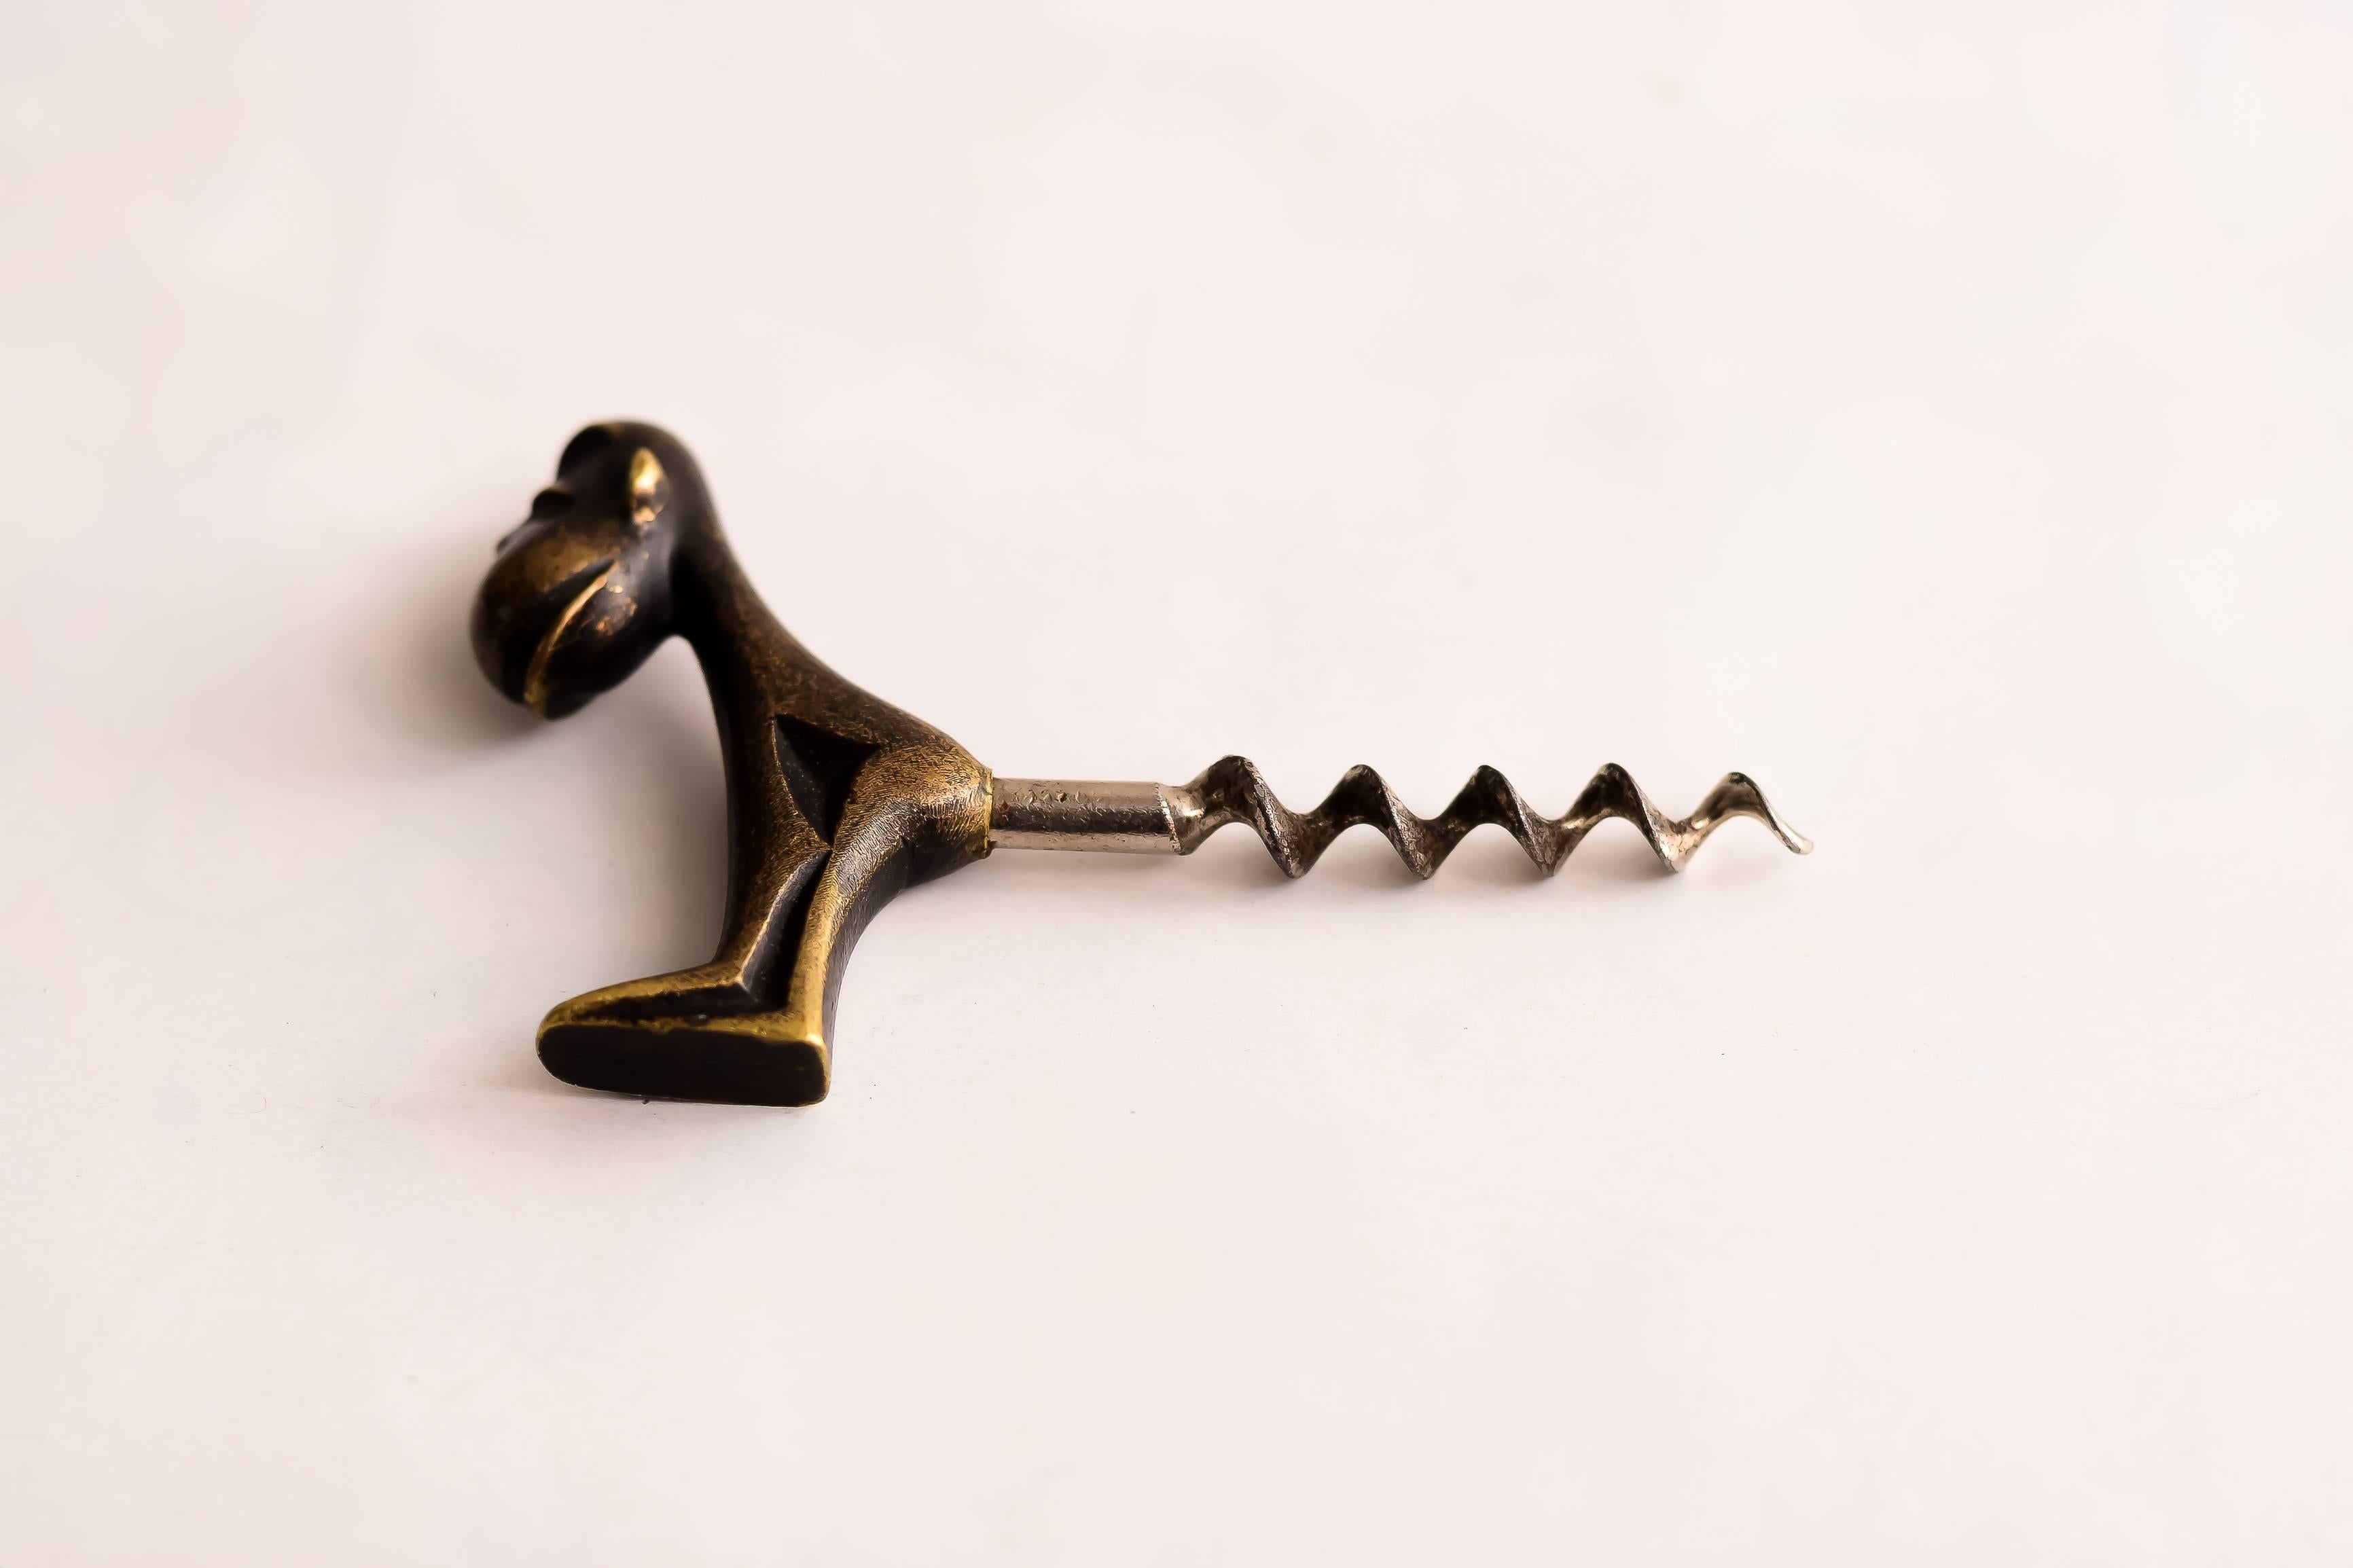 Monkey cork screw by Richard Rohac, Vienna, 1950s
Original condition.